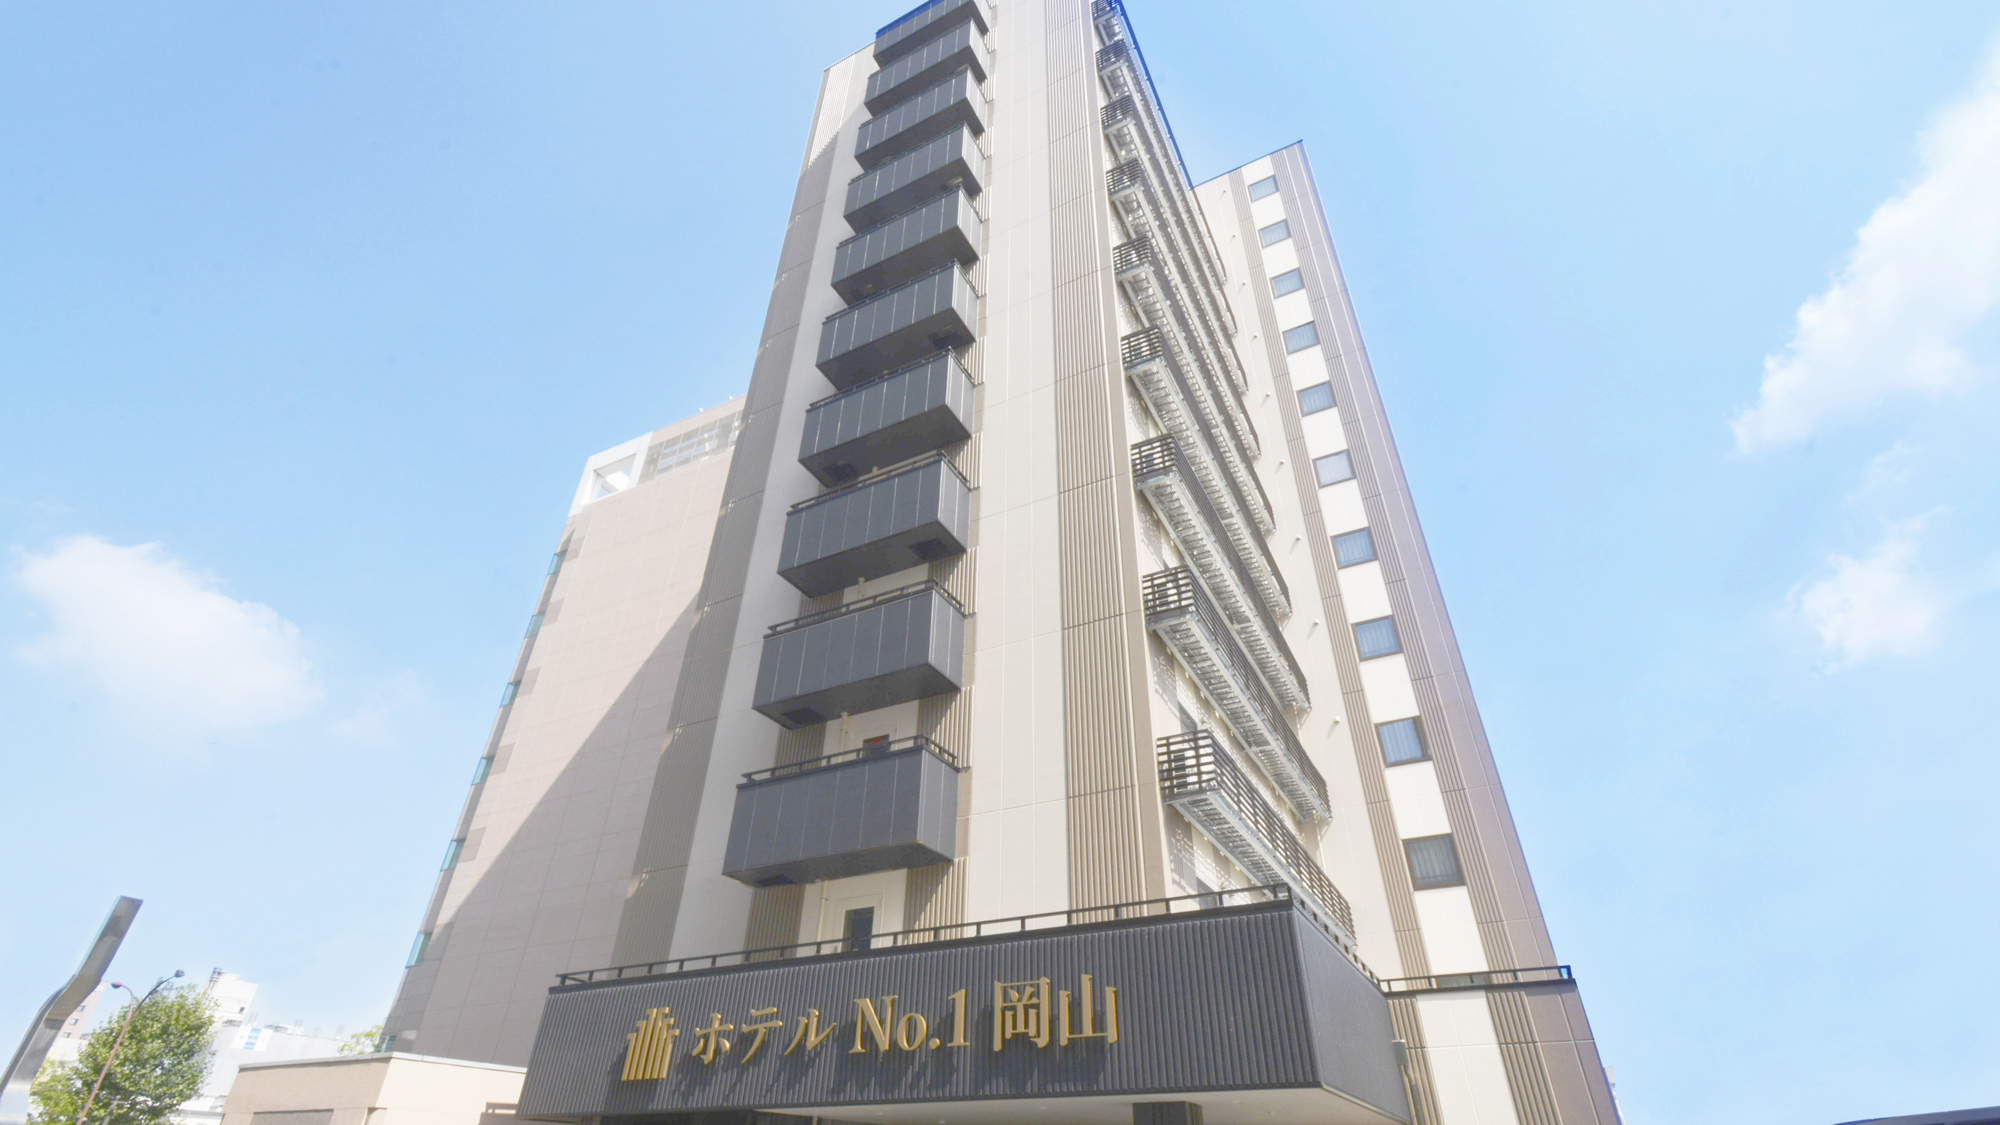 岡山 No. 1 飯店